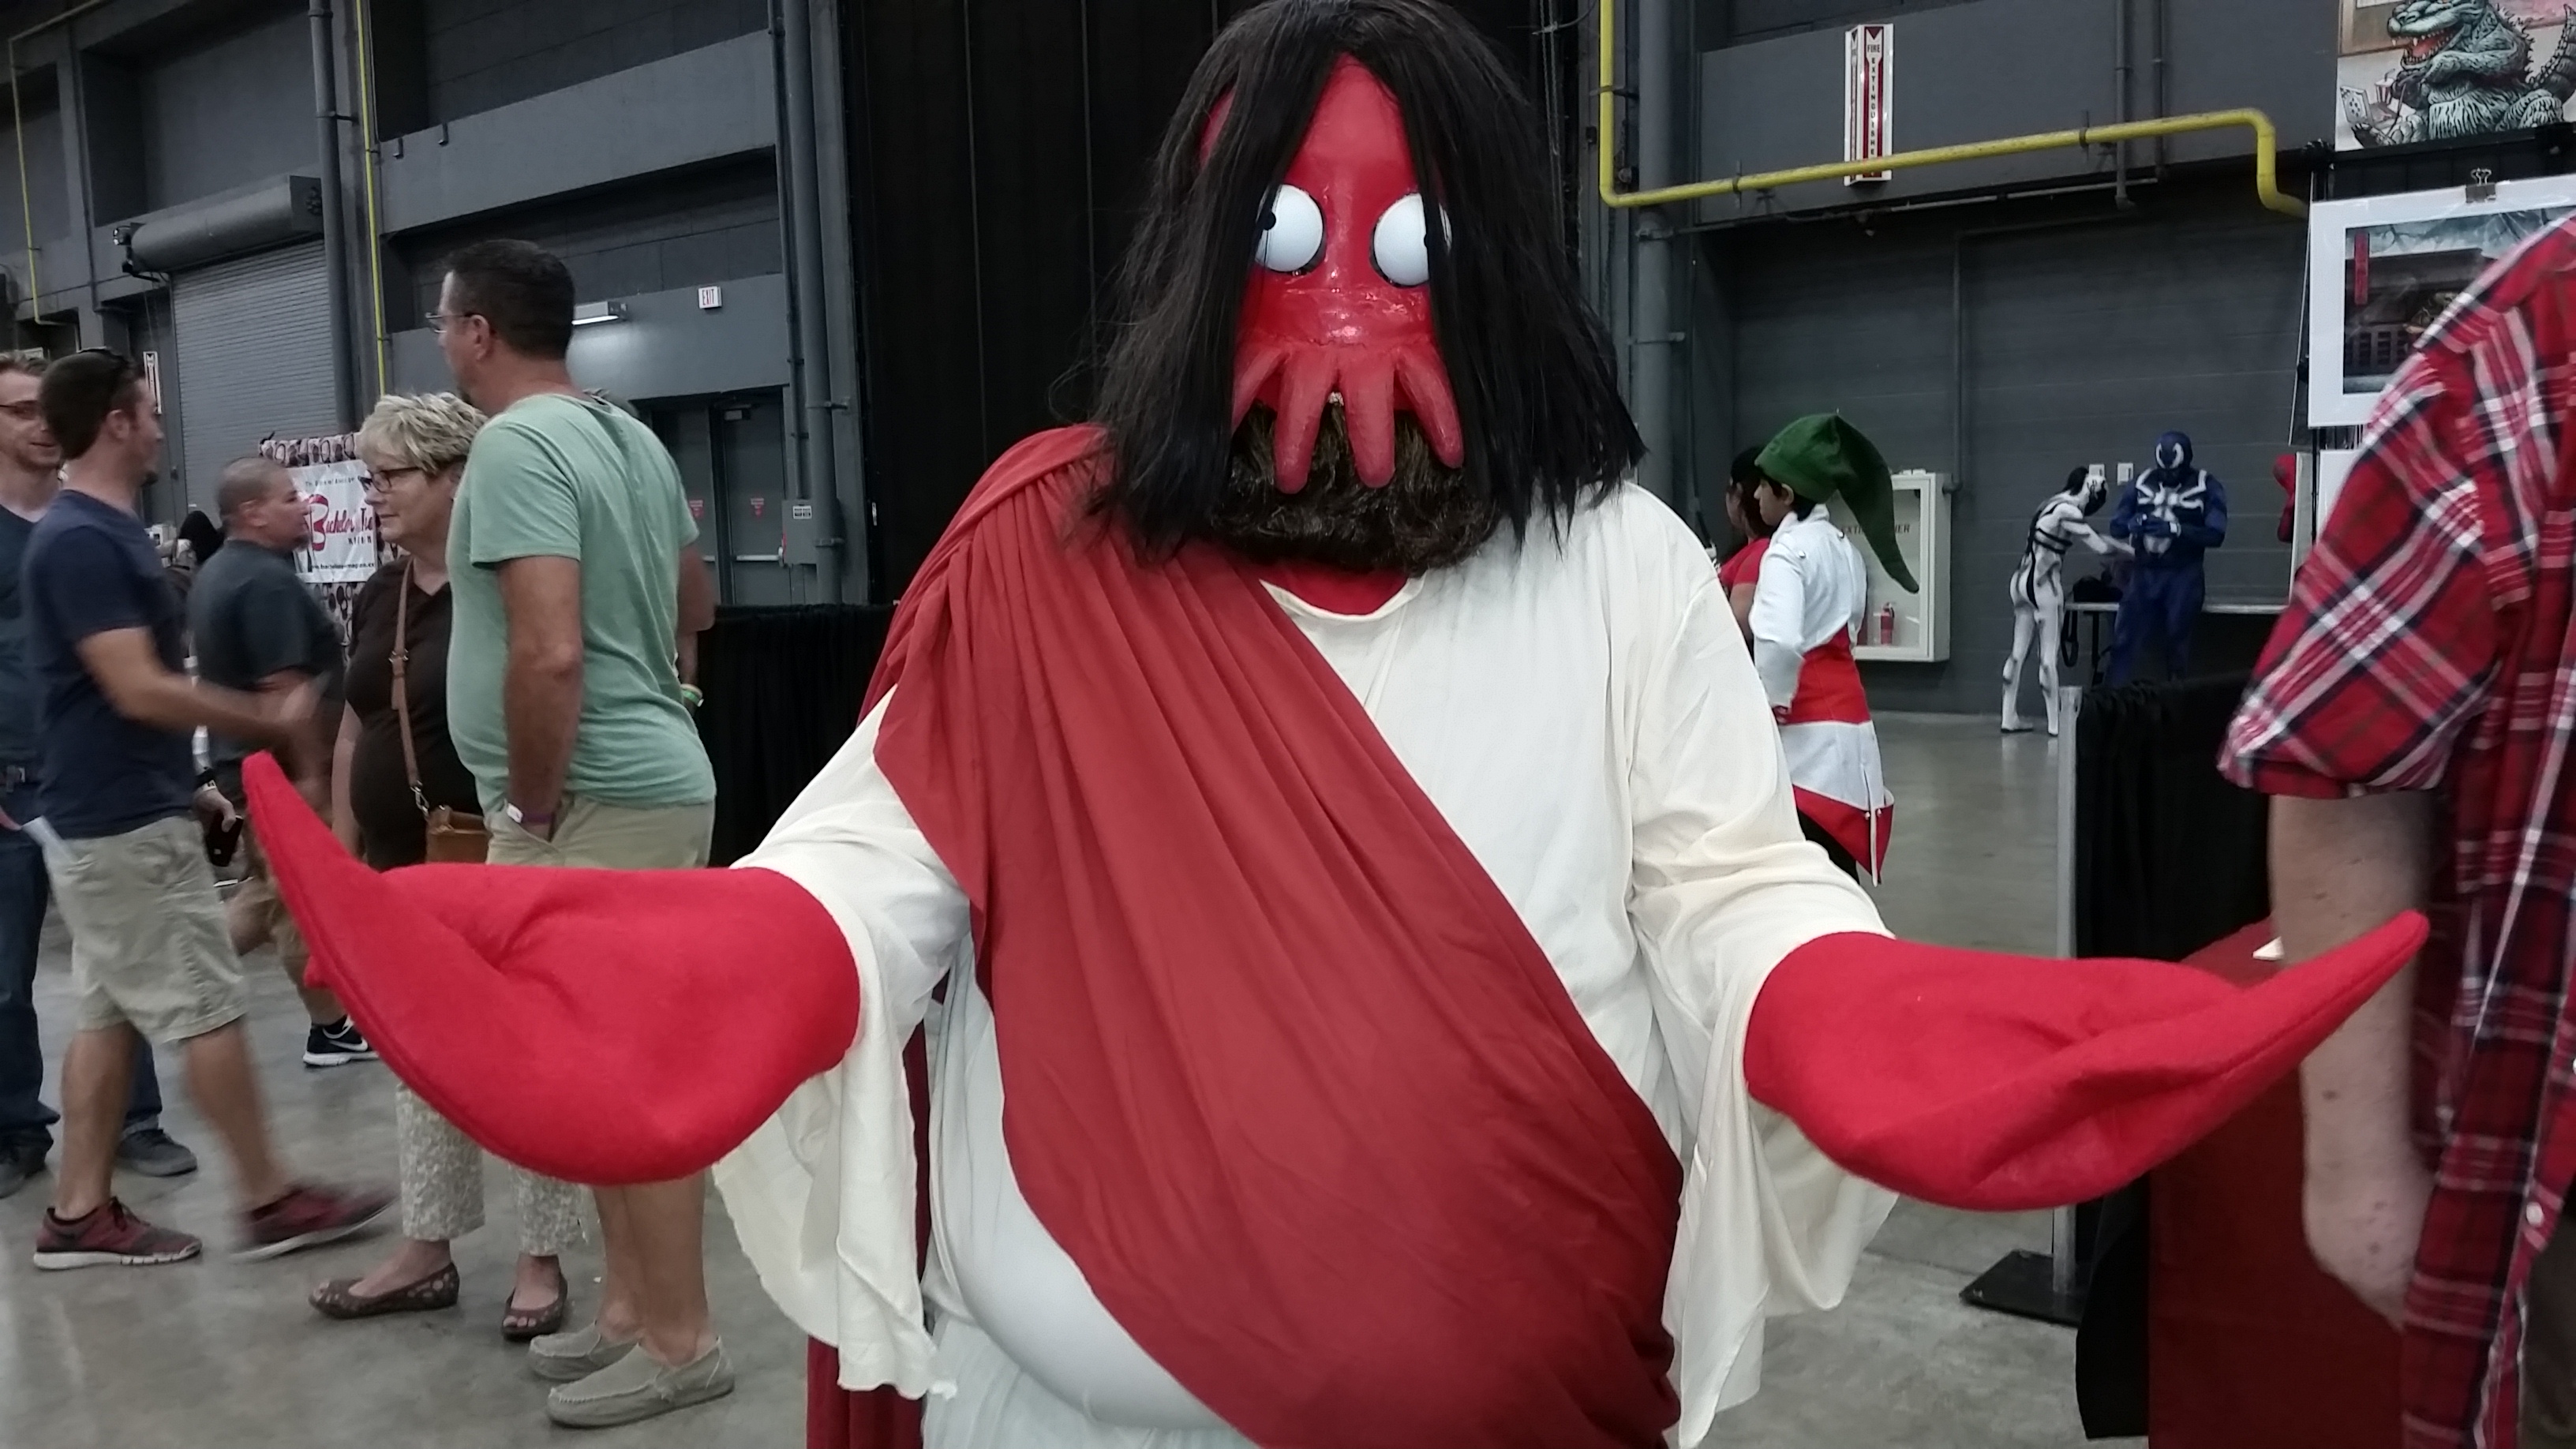 Zoidberg Jesus from Futurama. 